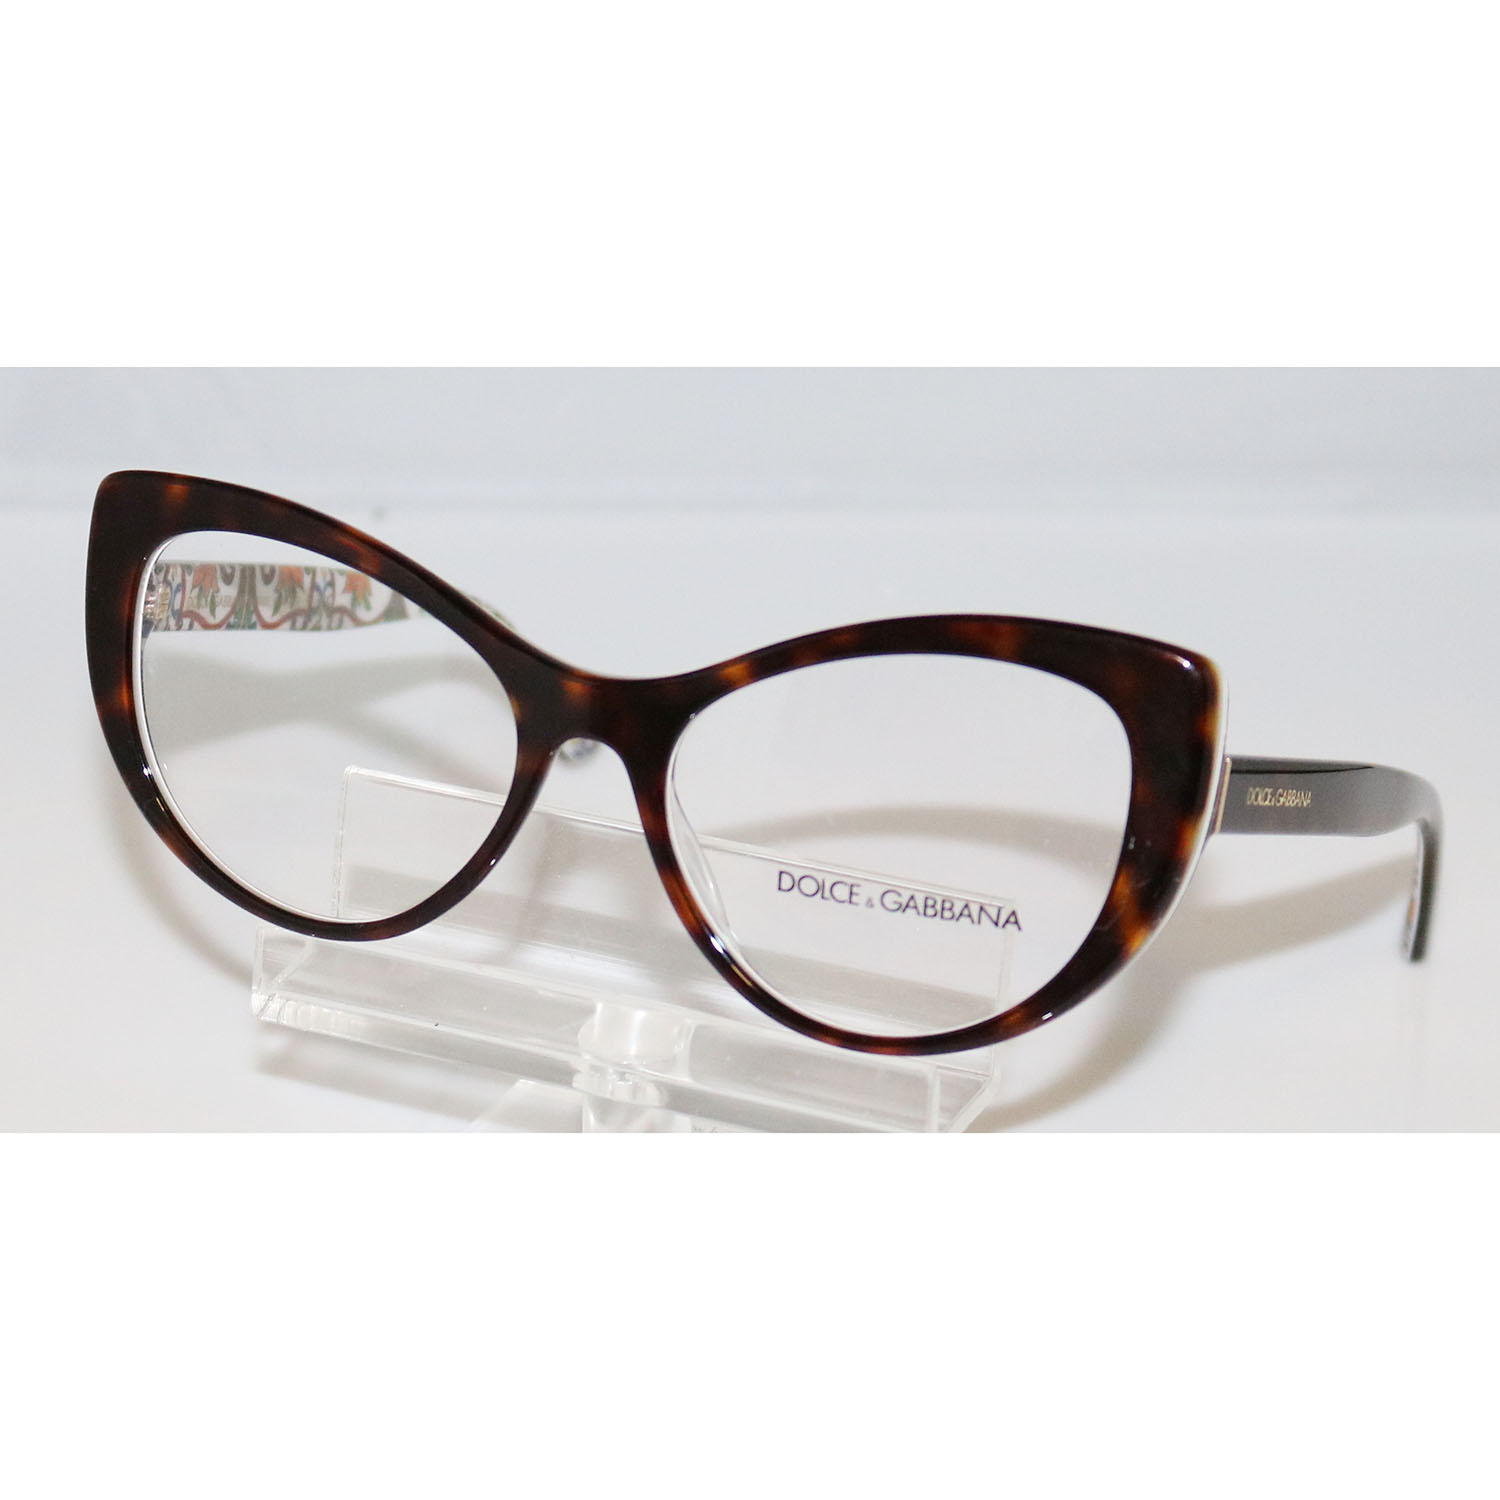 dolce & gabbana eyeglasses dg 3285